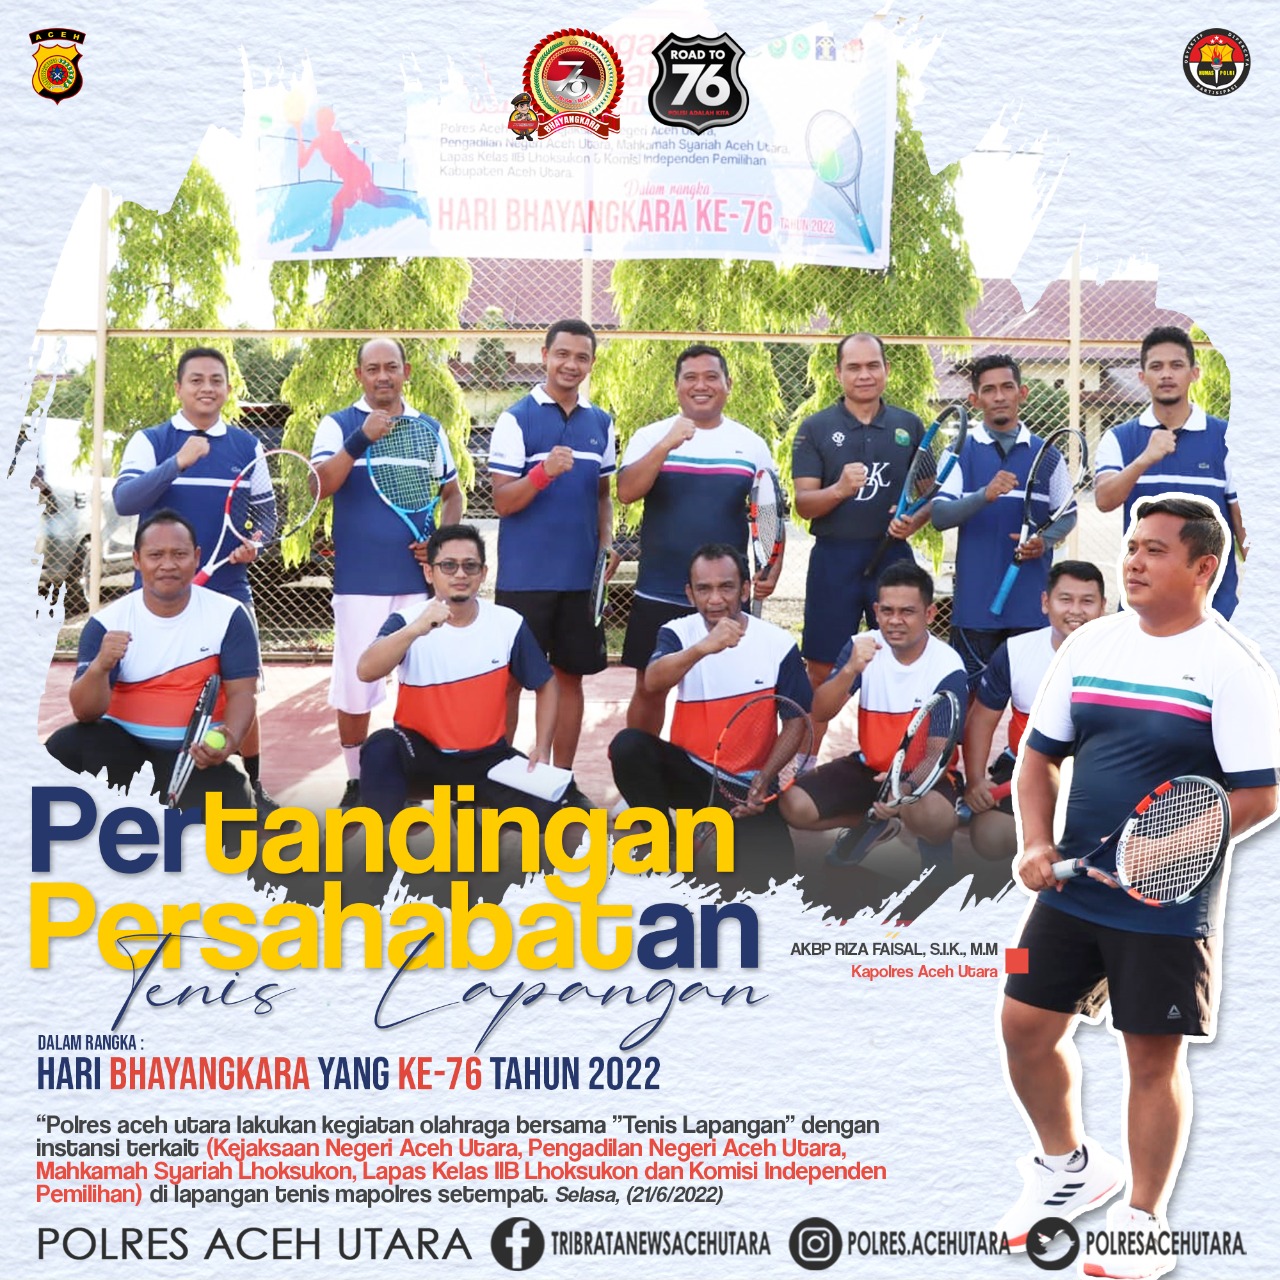 Junjung sportivitas Menjelang Hari Bhayangkara ke -76, Kapolres Aceh Utara gelar Pertandingan Persahabatan Tenis lapangan